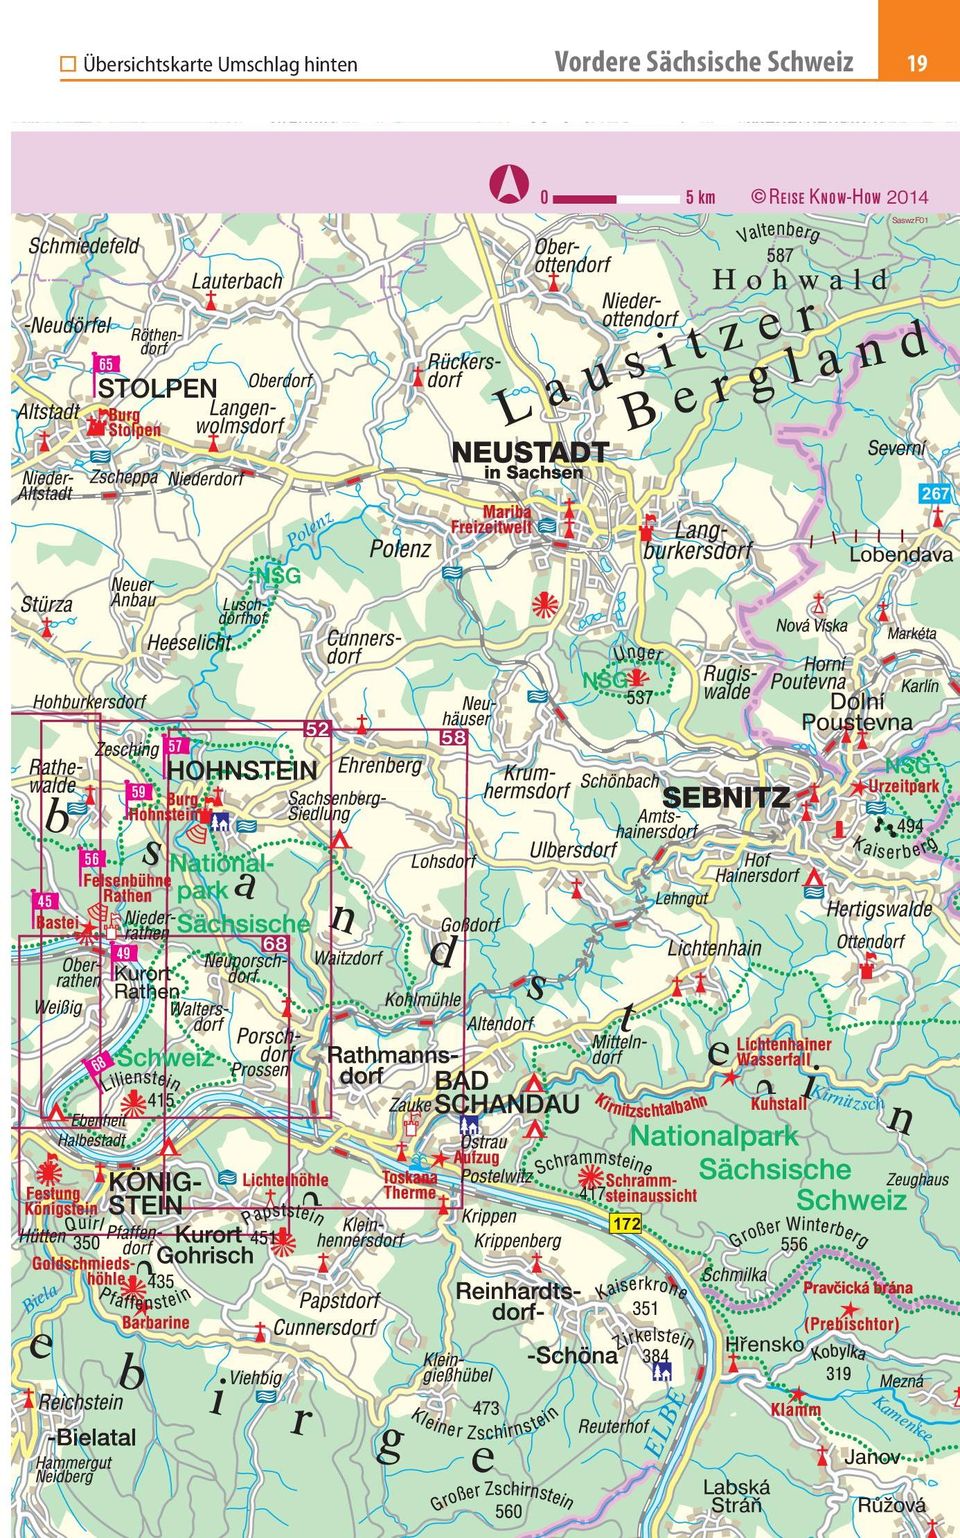 Sächsische Schweiz REISE KNOW-HOW 204